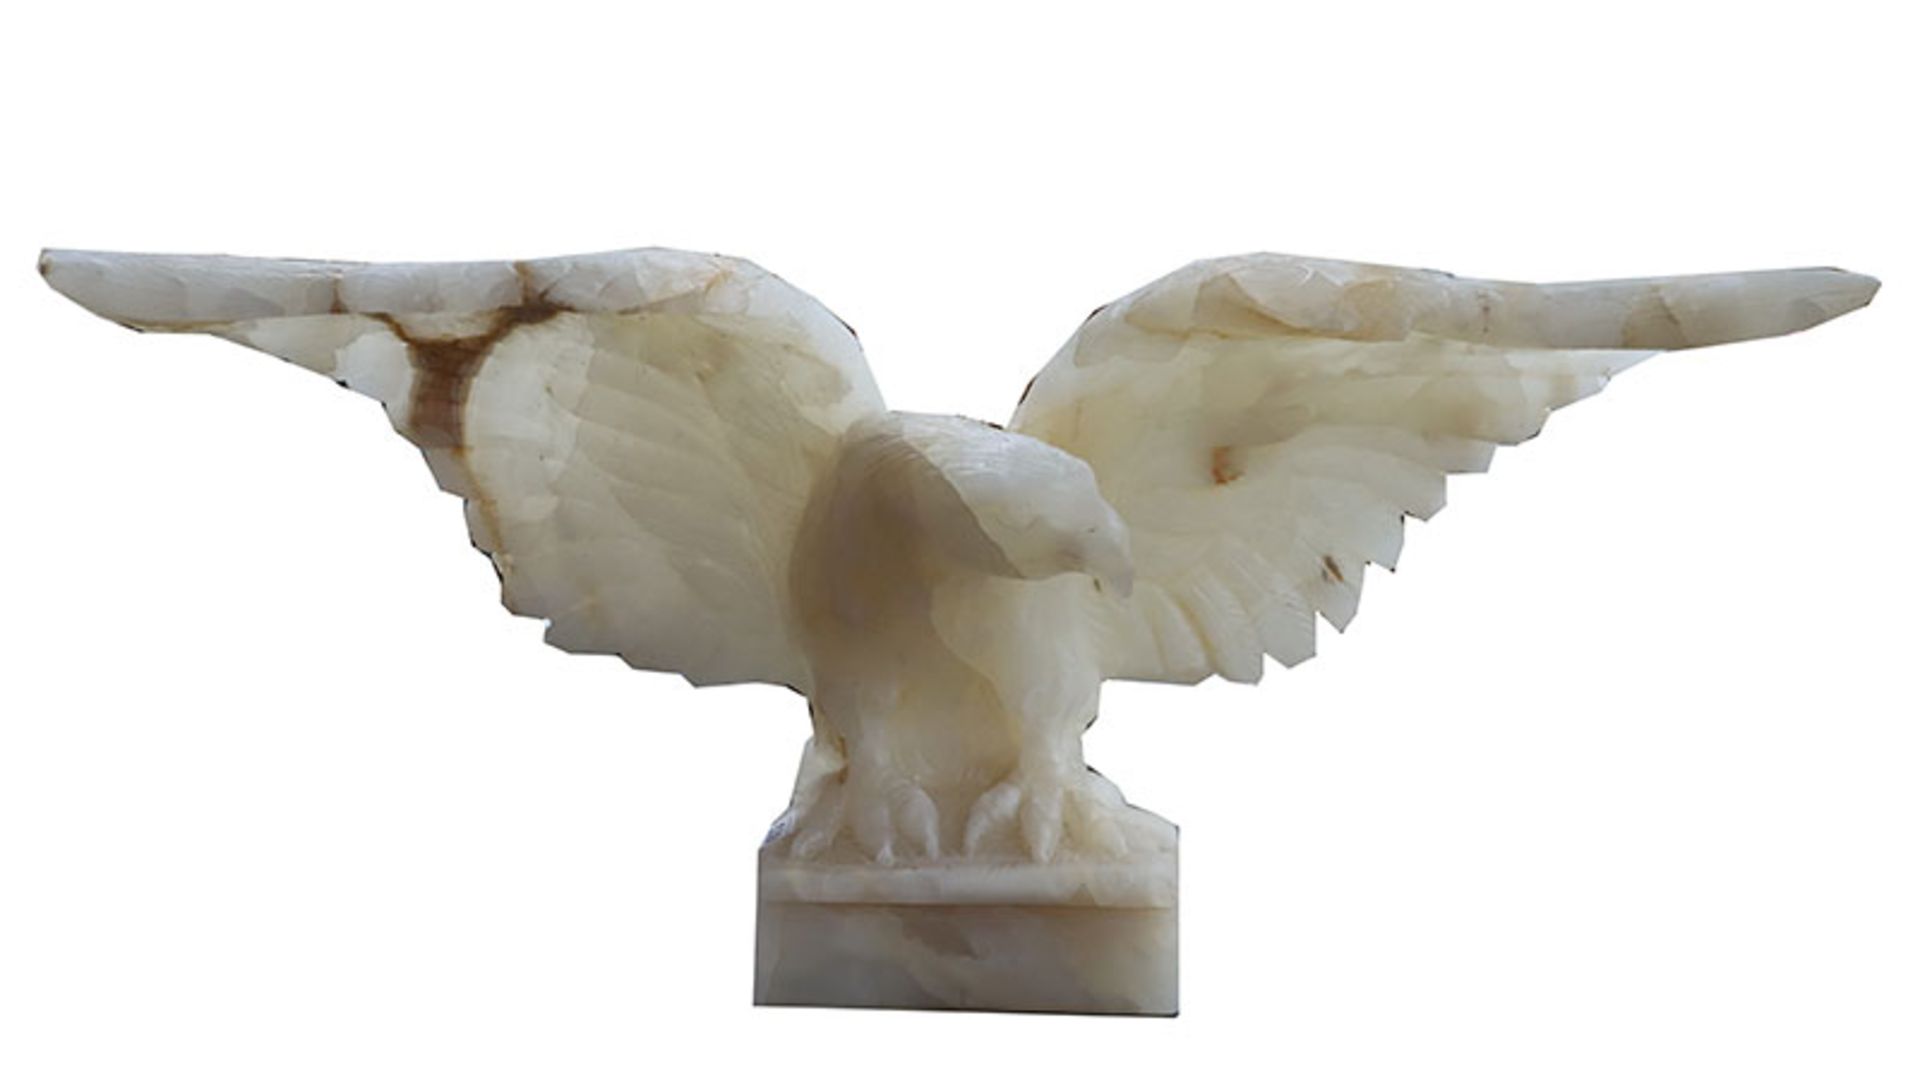 Marmorskulptur 'Adler', an den Flügeln beschädigt und geklebt, H 41 cm, B 95 cm, T 15 cm